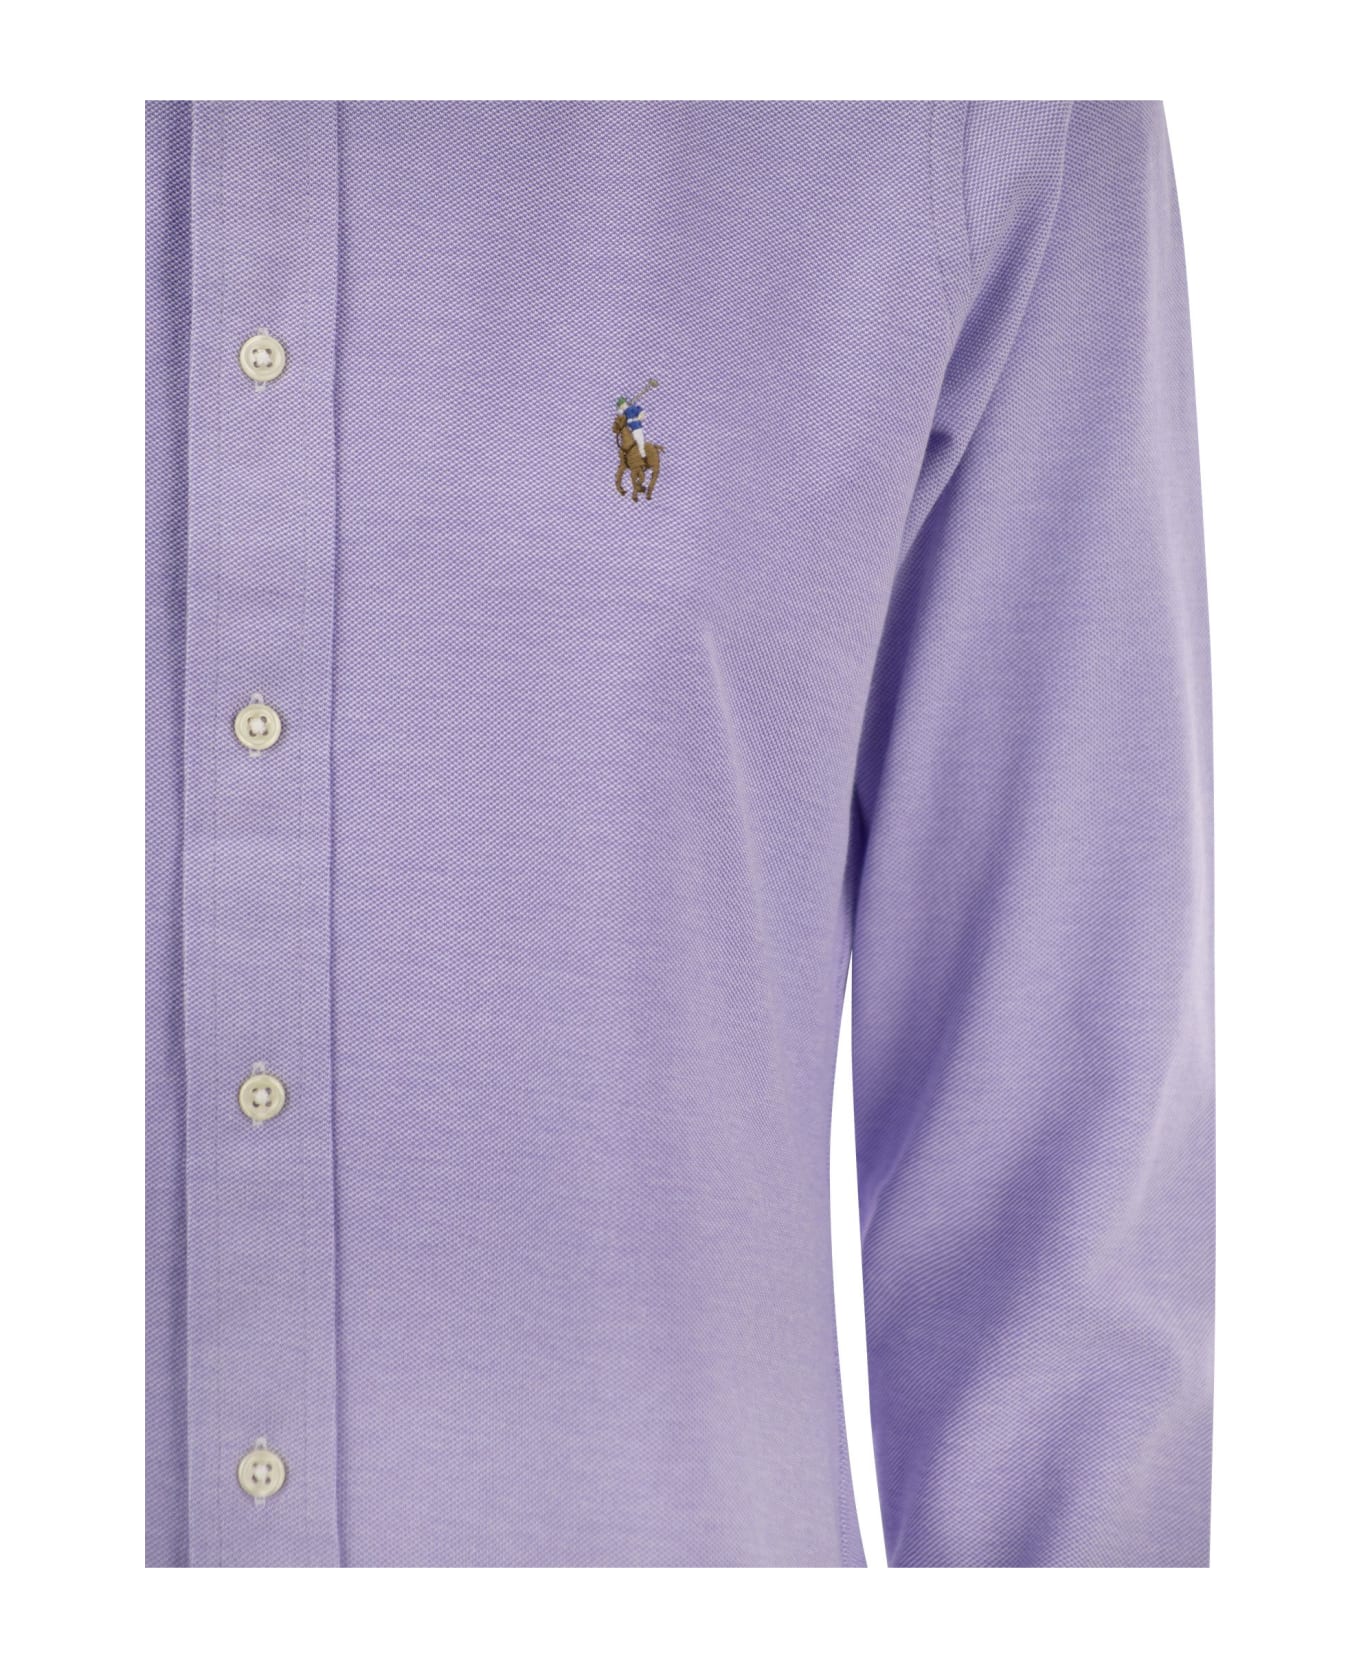 Ralph Lauren Oxford Shirt - Lilac